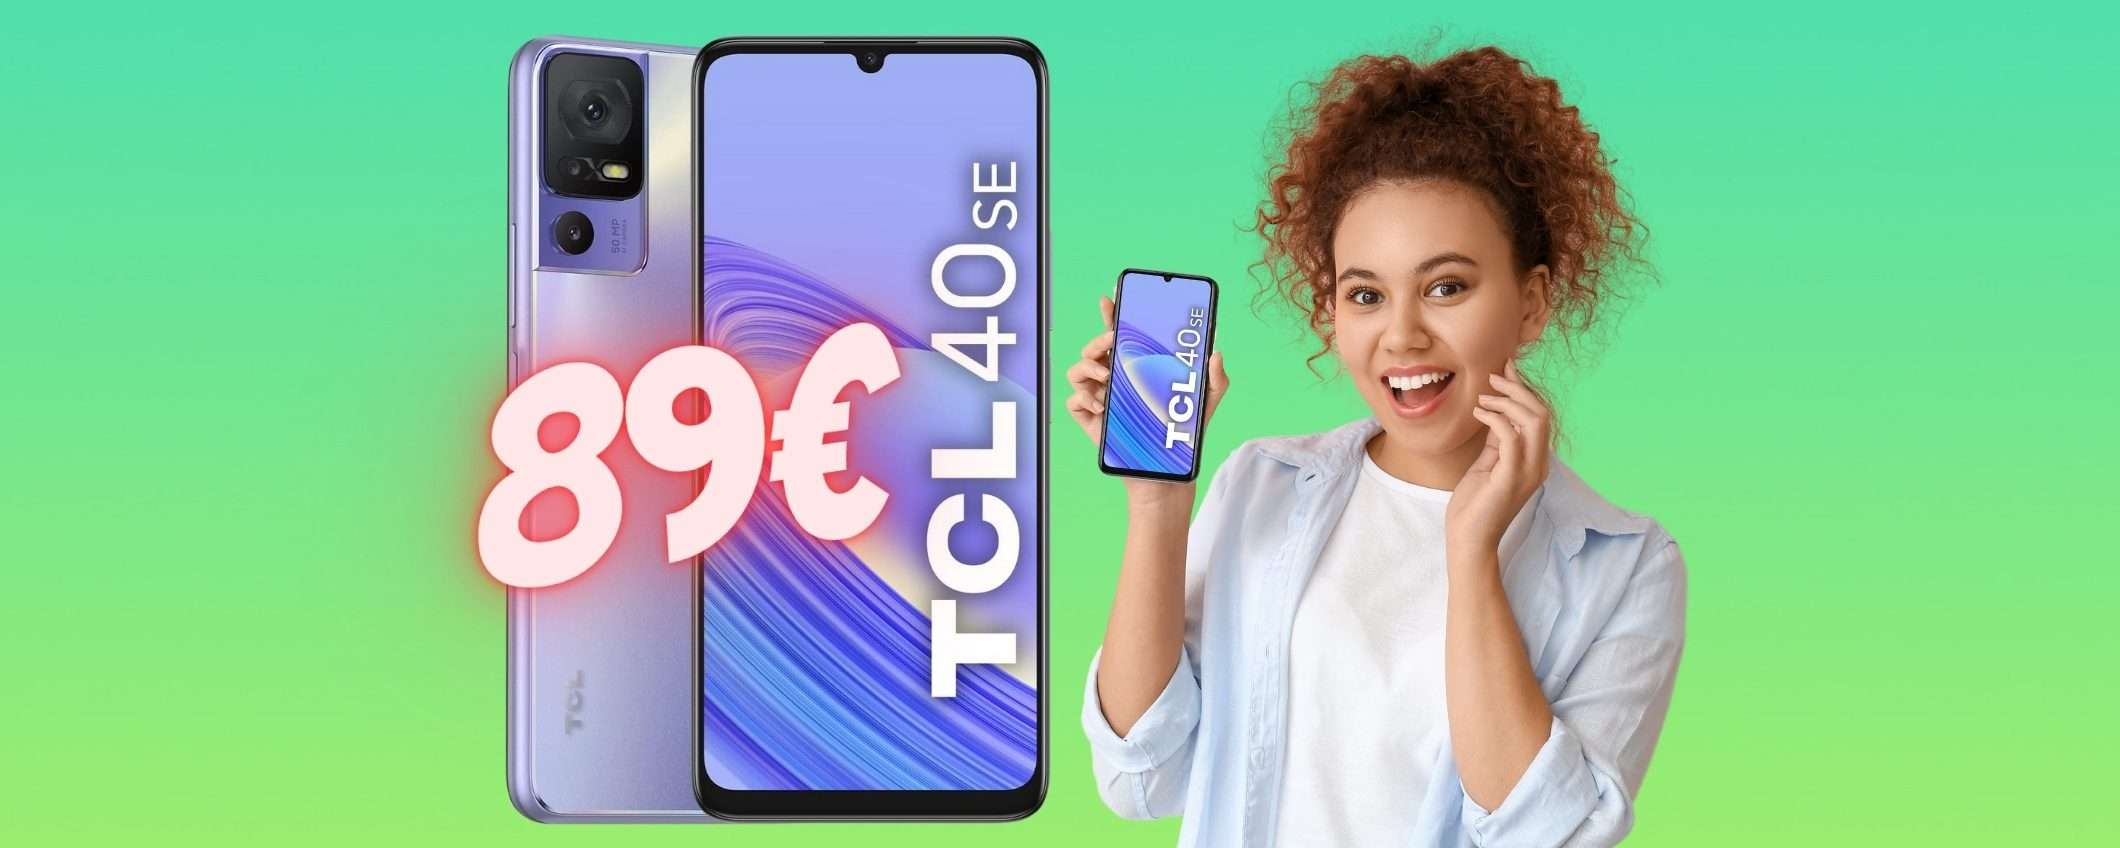 Smartphone TCL 40SE a SOLI 89€: il prezzo FOLLE Amazon SPACCA il Web